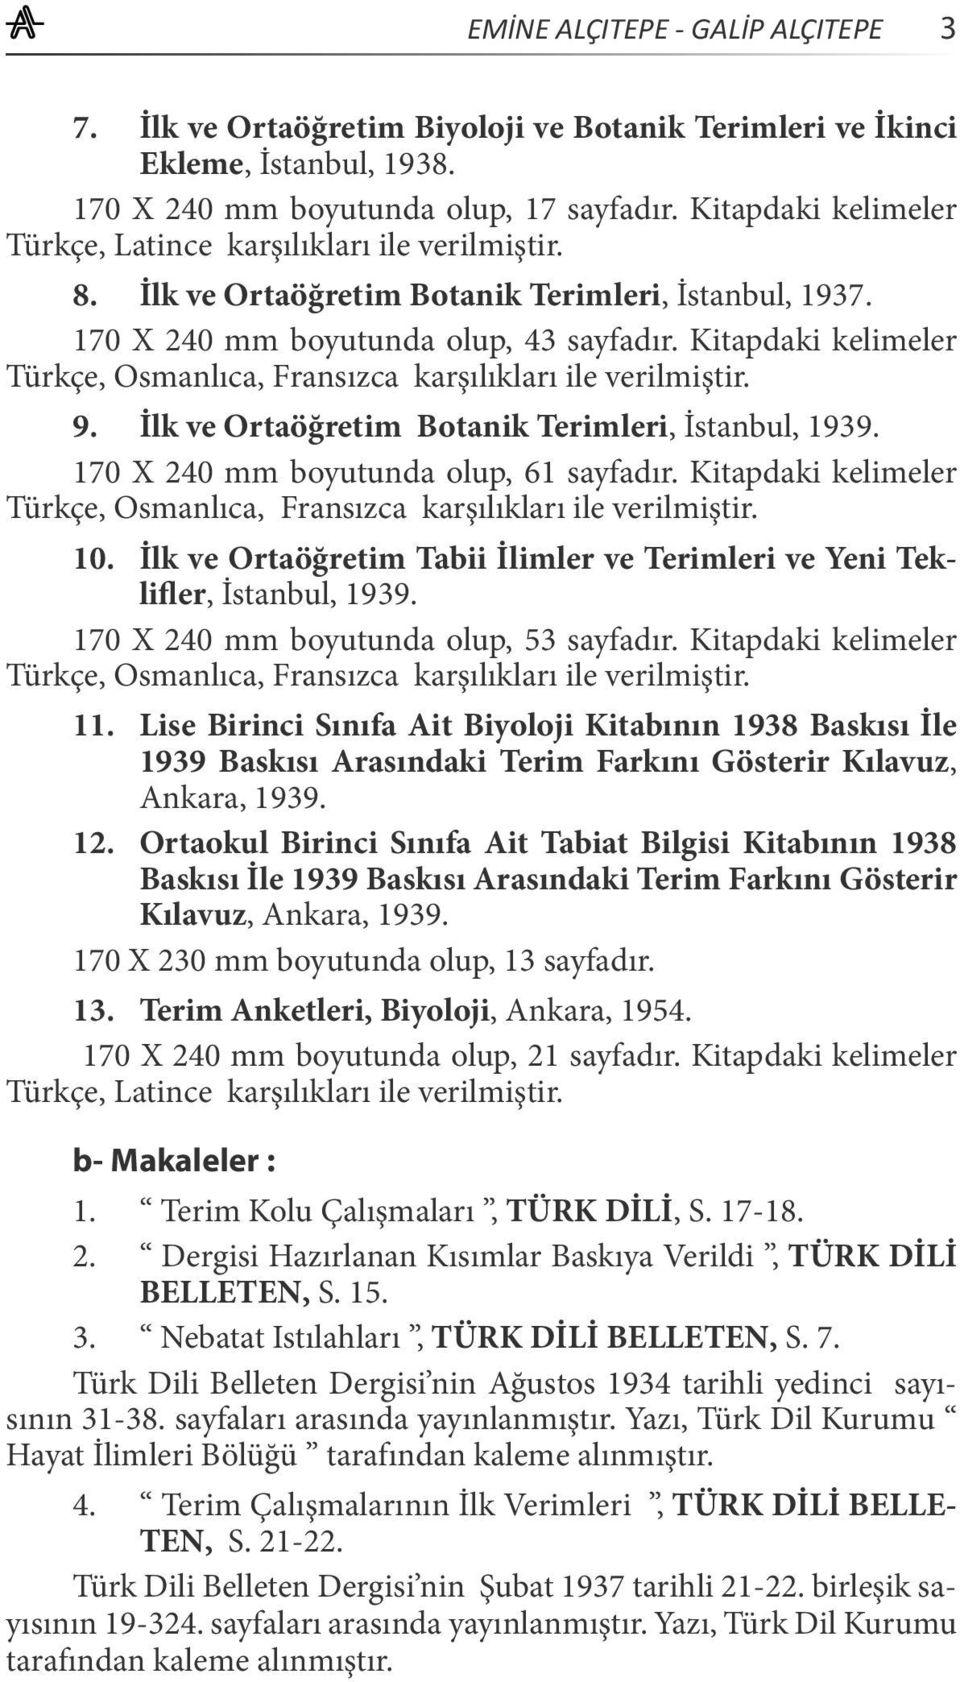 Kitapdaki kelimeler Türkçe, Osmanlıca, Fransızca karşılıkları ile verilmiştir. 9. İlk ve Ortaöğretim Botanik Terimleri, İstanbul, 1939. 170 X 240 mm boyutunda olup, 61 sayfadır.